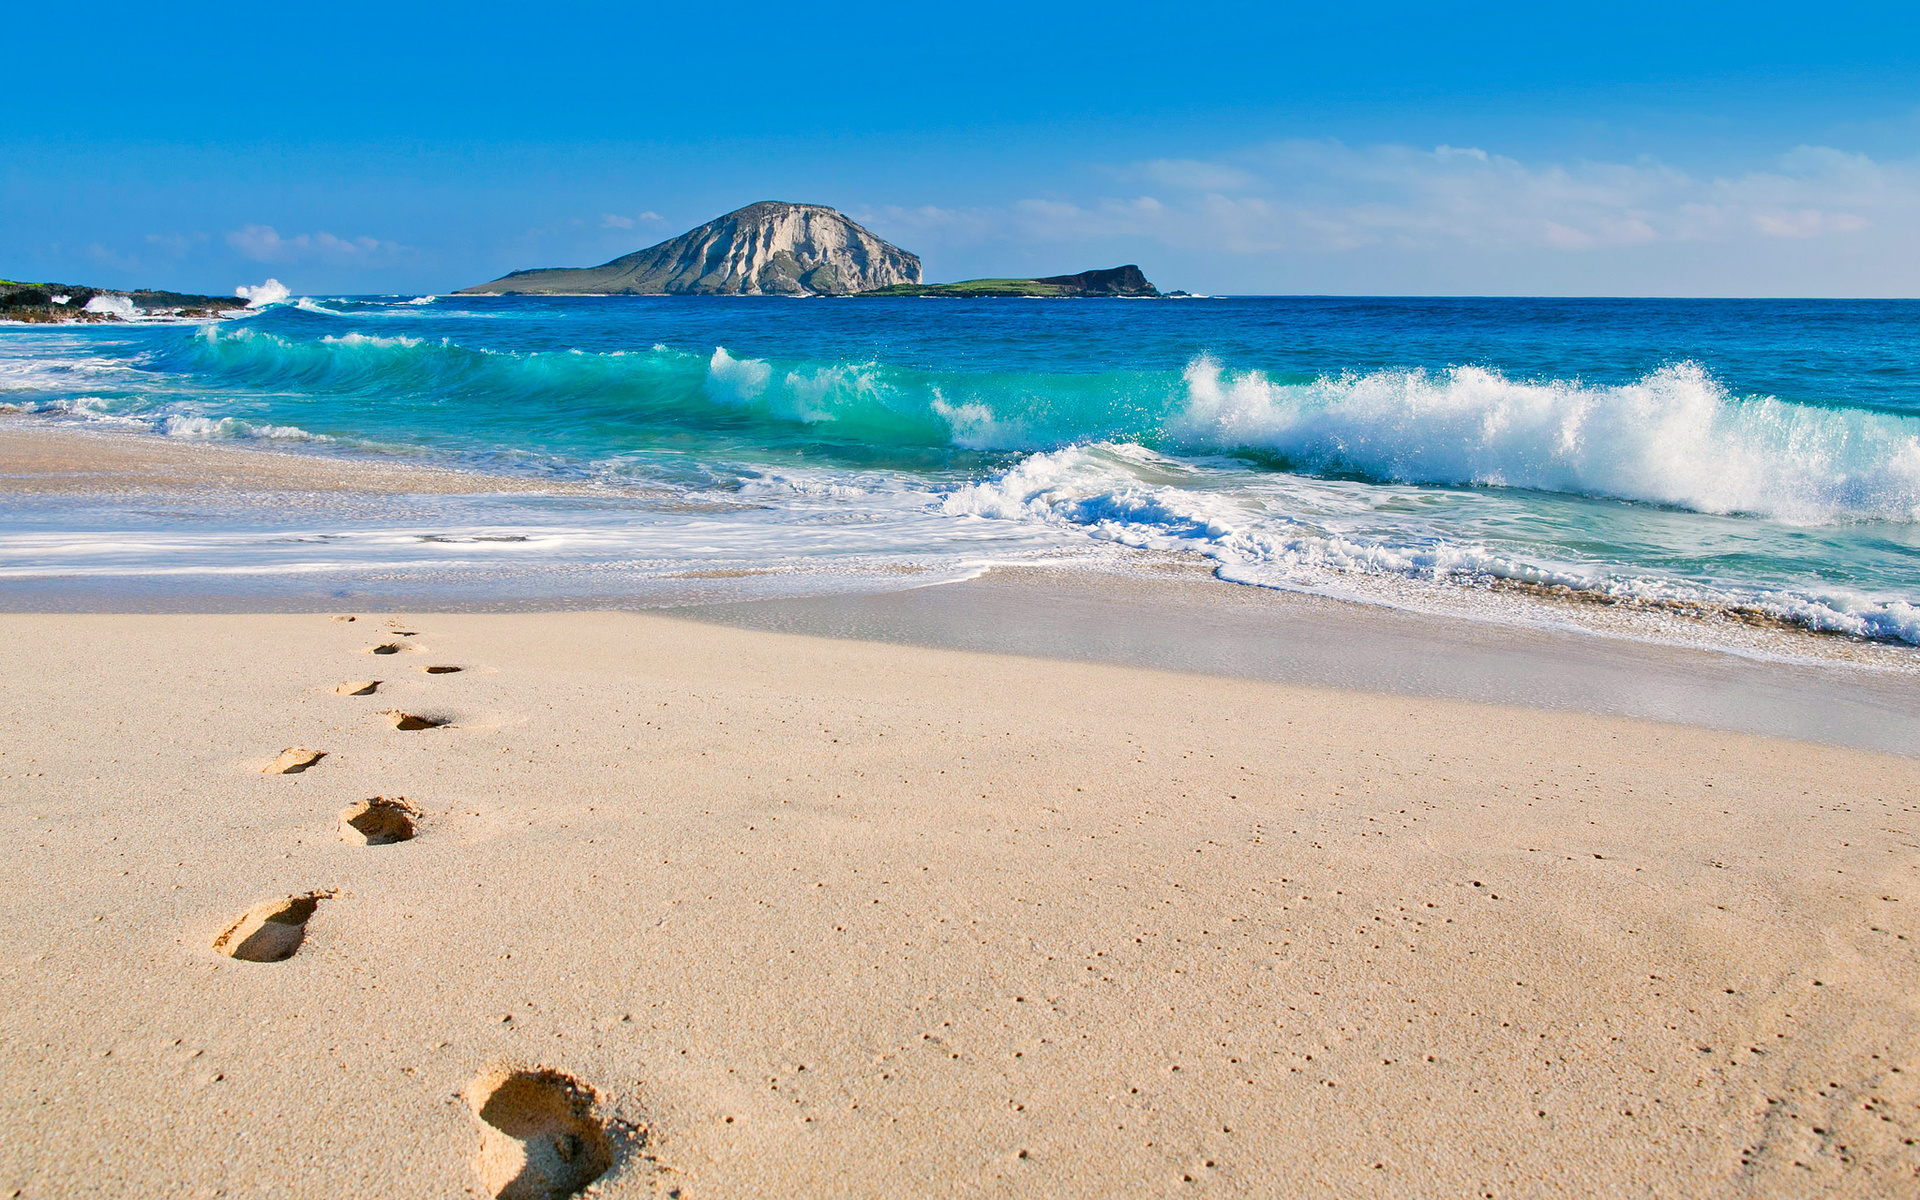 Beach: Đến với bãi biển tuyệt đẹp chúng tôi, nơi mà bạn sẽ được tận hưởng niềm vui của những phút giây đầy sức sống trên cát trắng và nước biển trong xanh! Hãy khám phá vẻ đẹp của bãi biển với những hình ảnh tuyệt đẹp của chúng tôi!